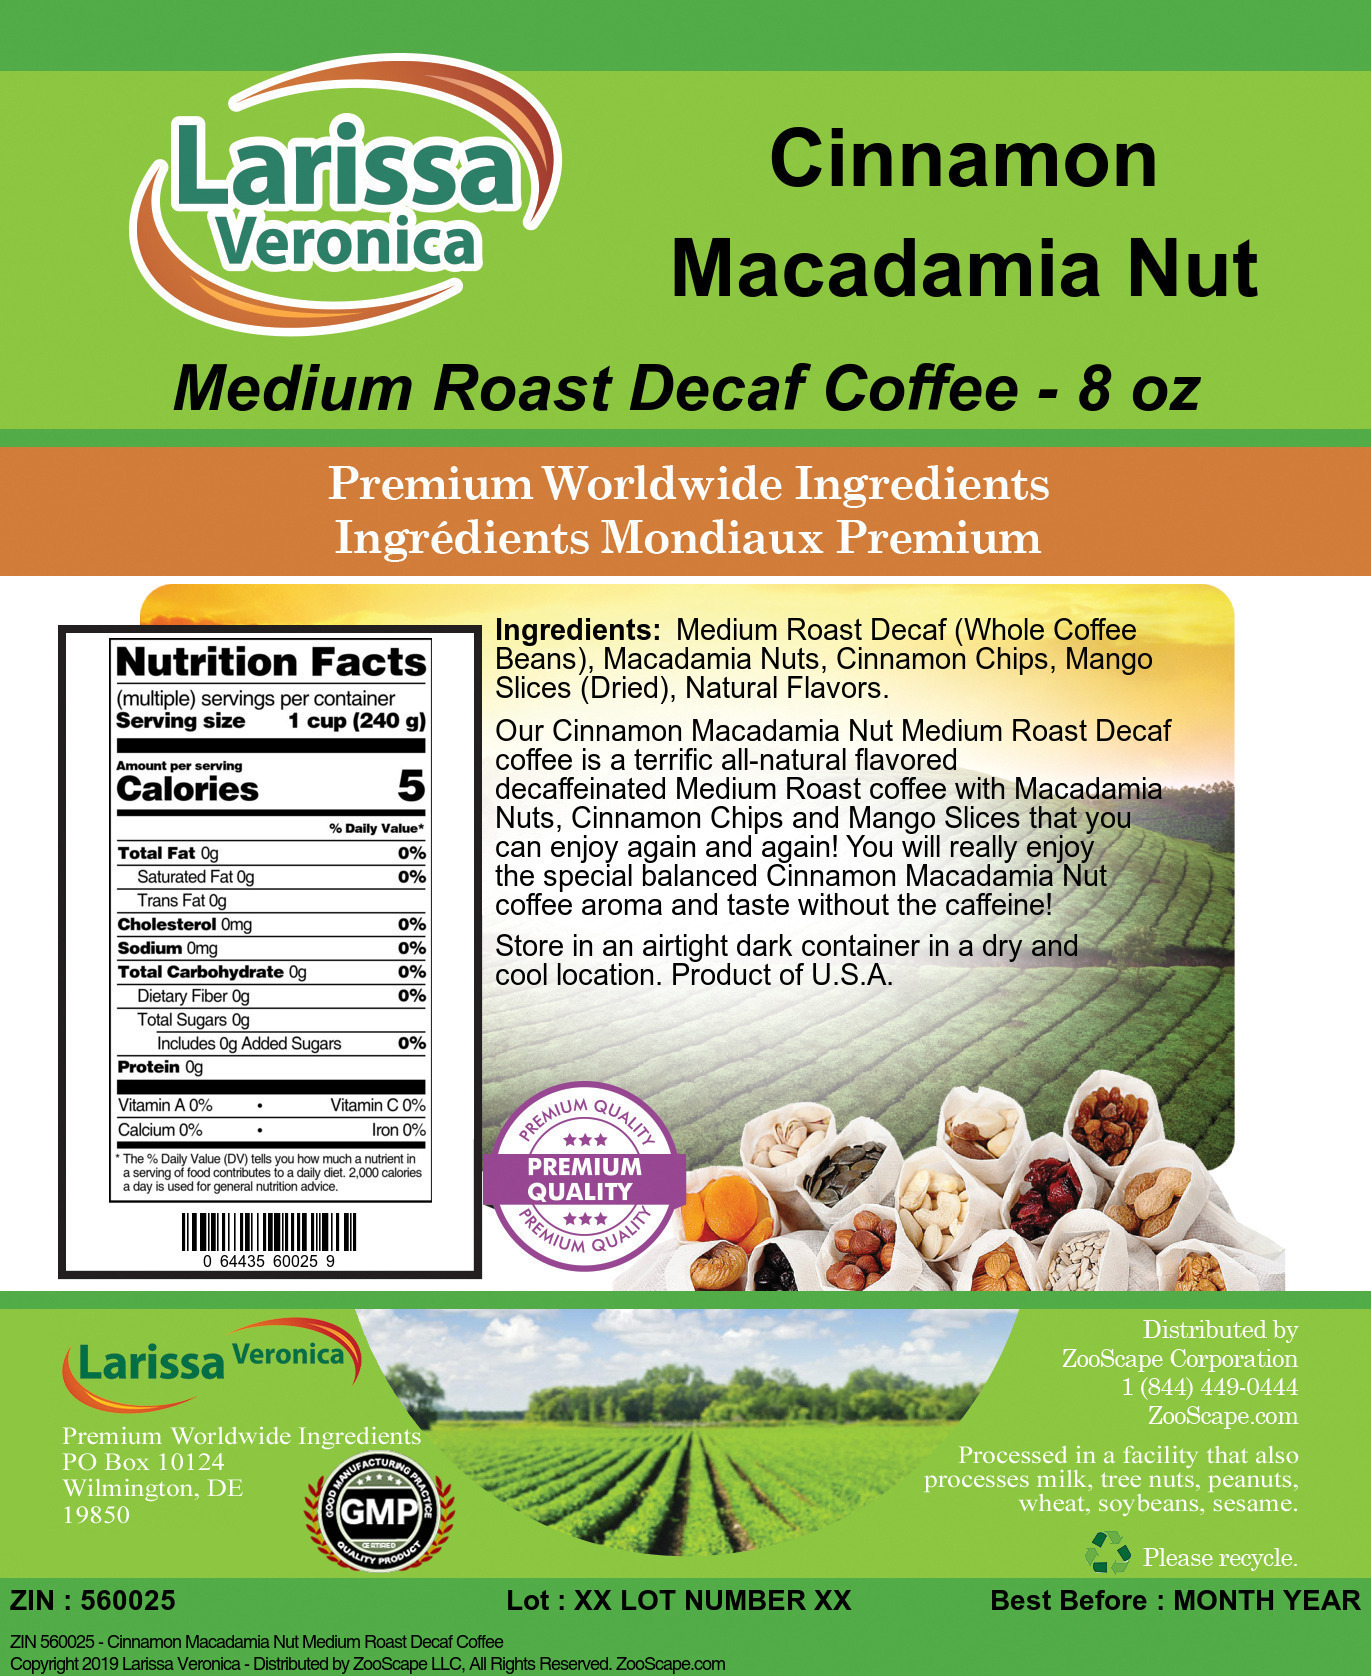 Cinnamon Macadamia Nut Medium Roast Decaf Coffee - Label